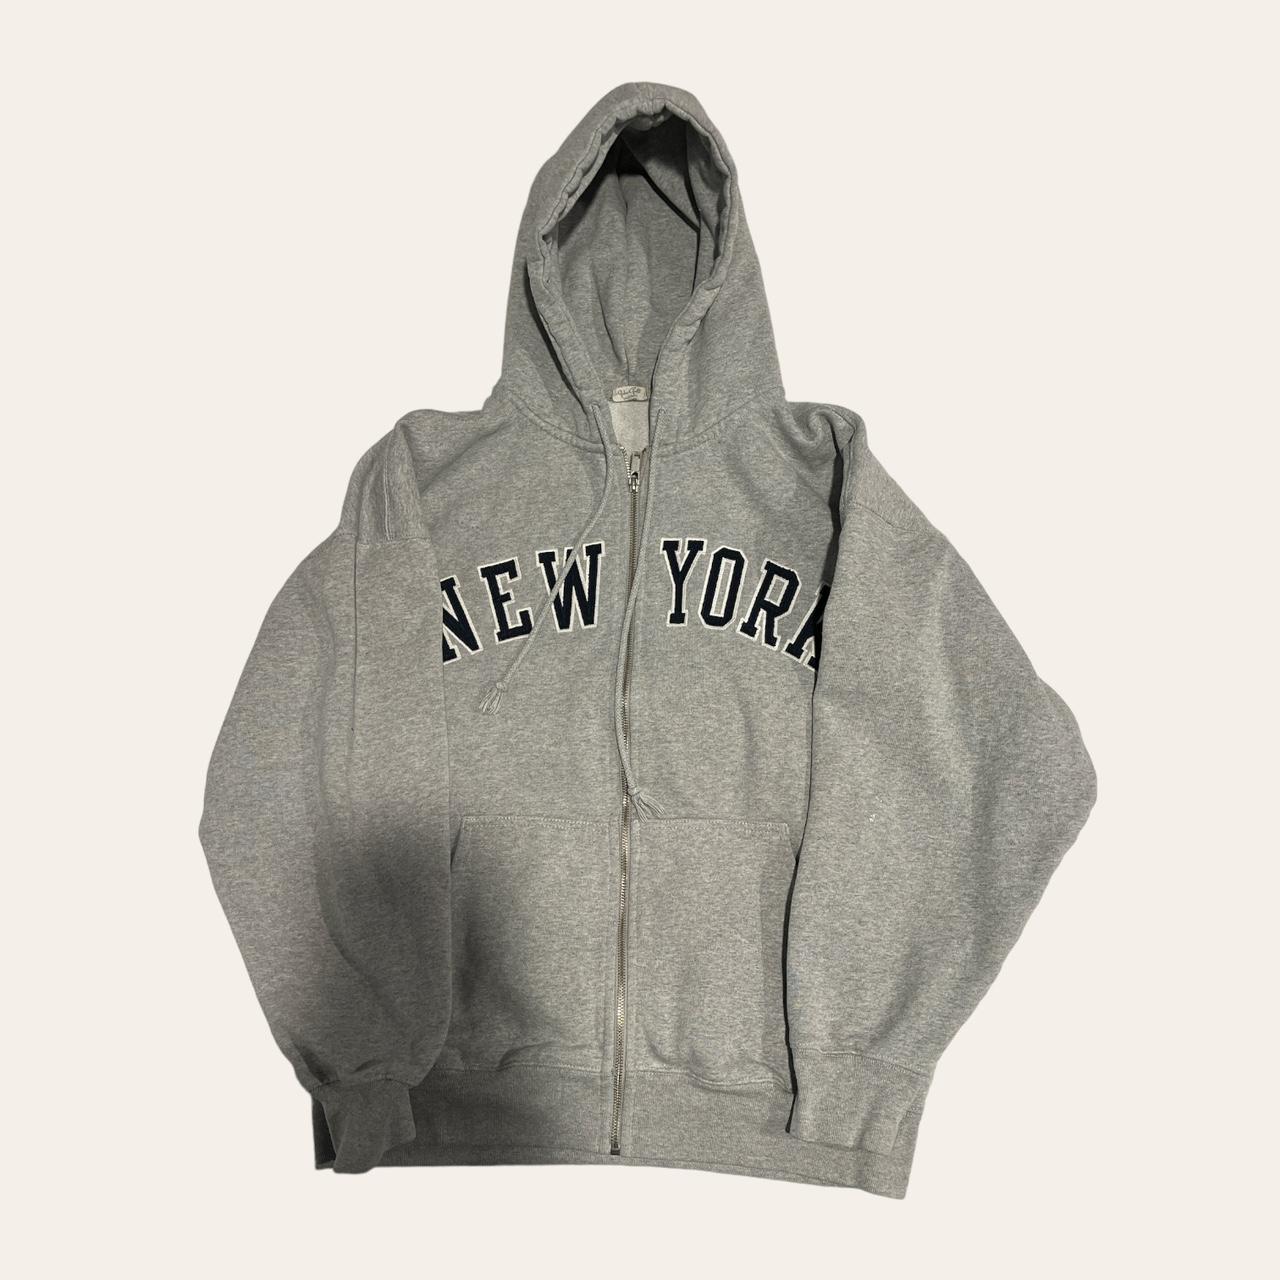 Brandy melville-new-york-hoodie - Depop